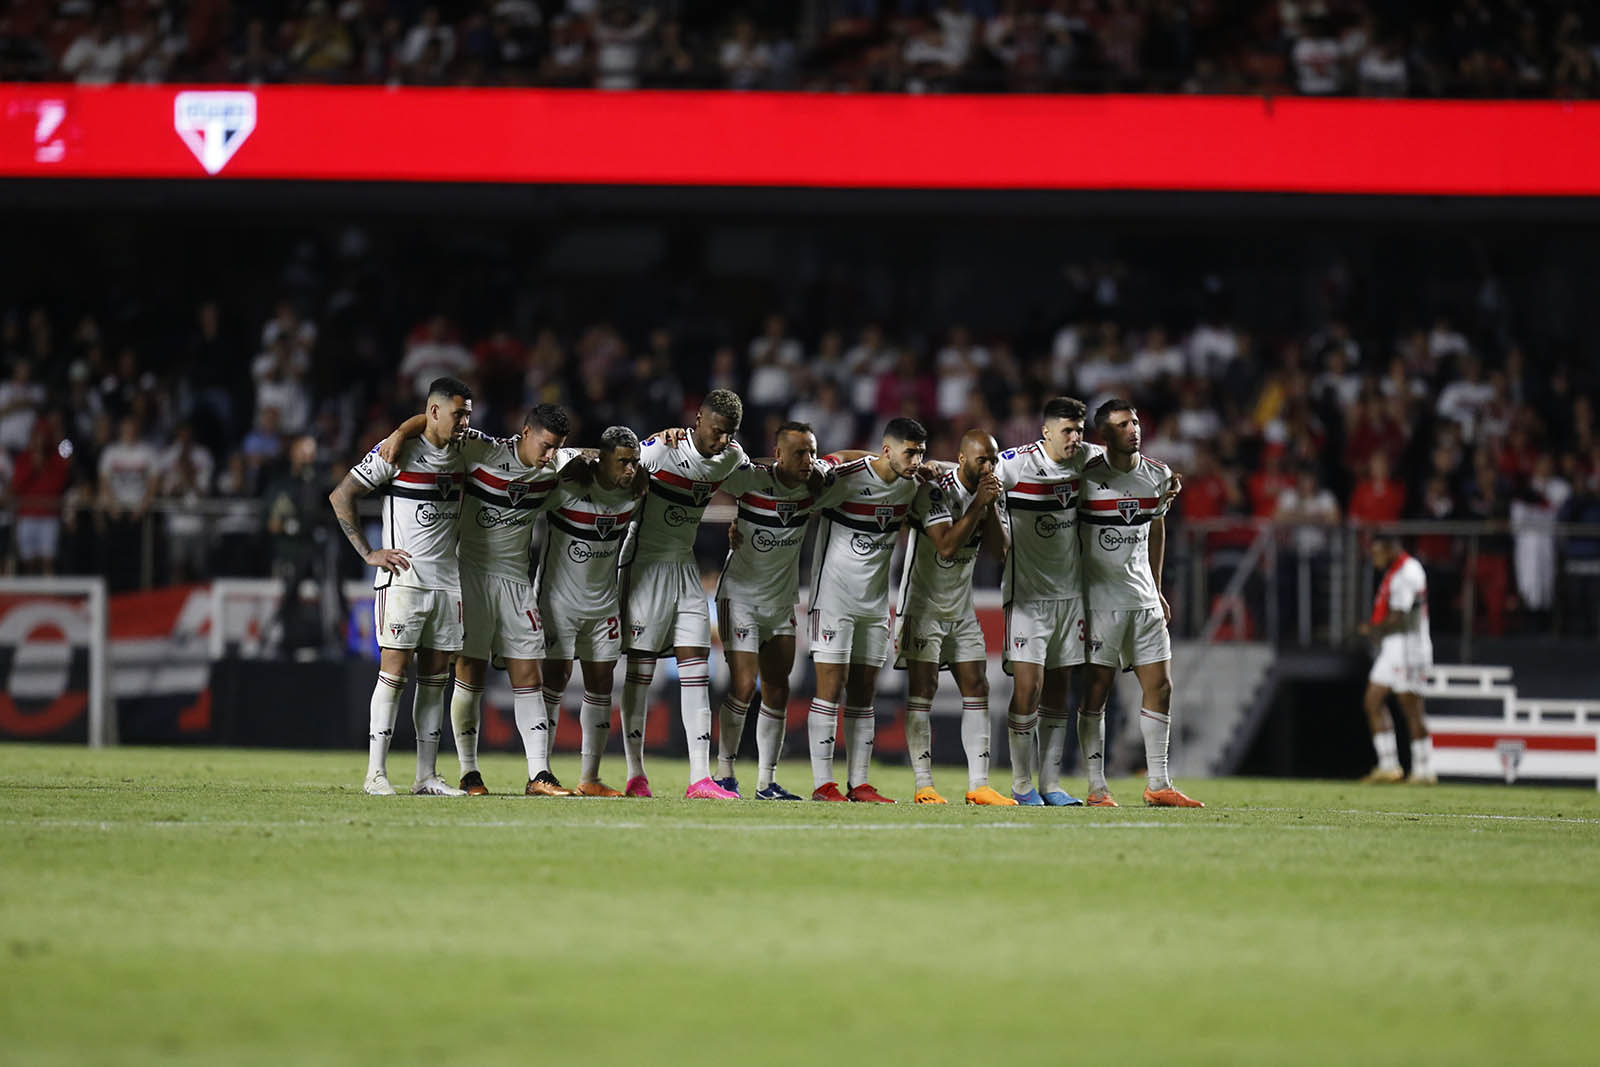 Descontos para sócios forçam São Paulo a ter preços exorbitantes para final da Copa do Brasil